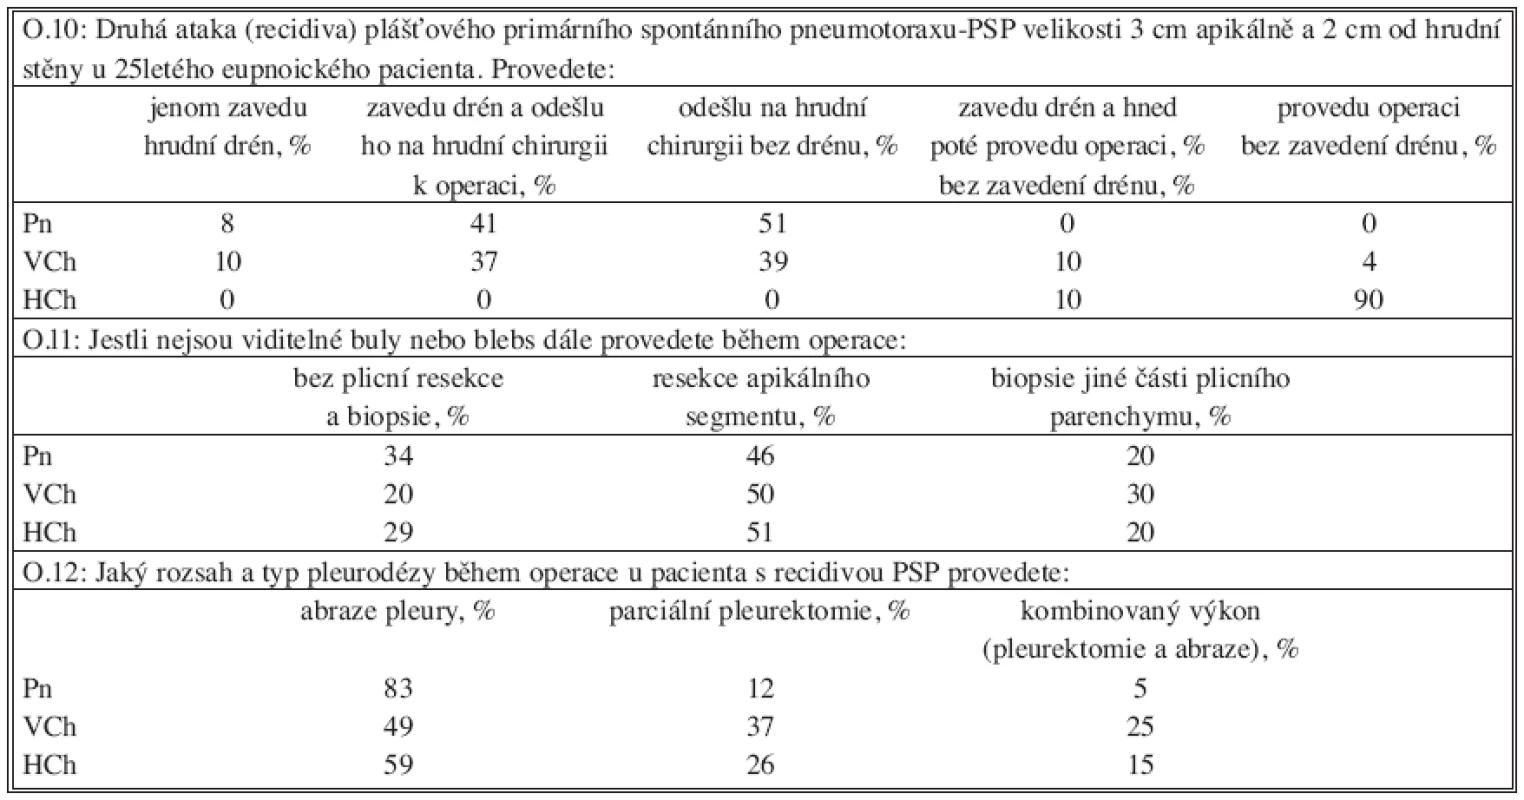 Recidiva primárního spontánního pneumotoraxu
Tab. 3. Recurrence of primary spontaneous pneumothorax